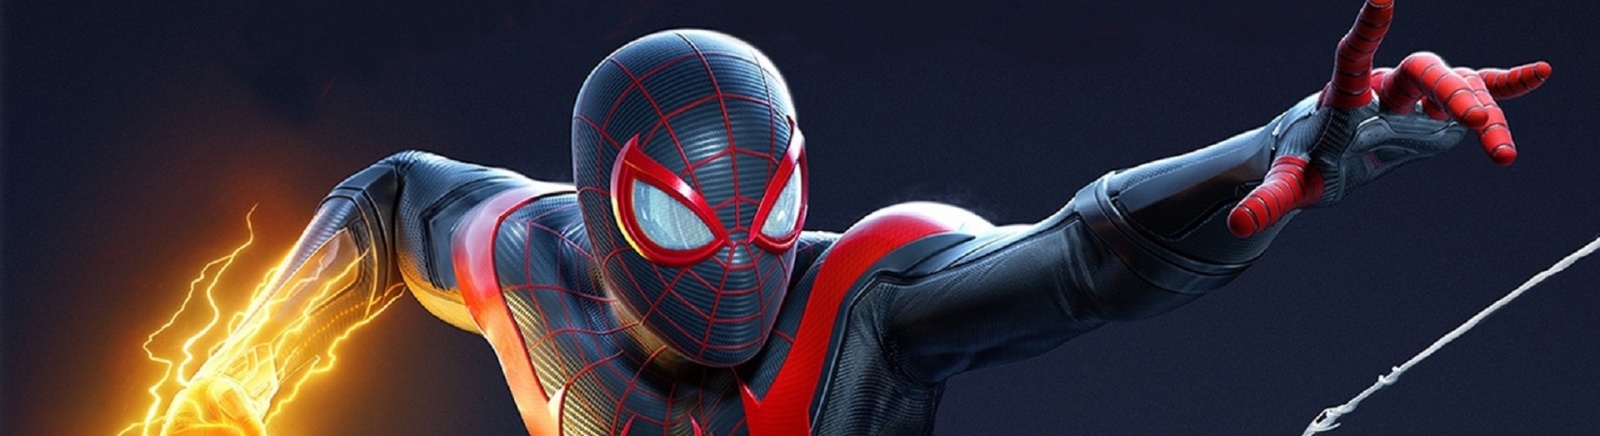 Дата выхода Marvel's Spider-Man: Miles Morales (Человек-паук: Майлз Моралес)  на PC, PS5 и PS4 в России и во всем мире